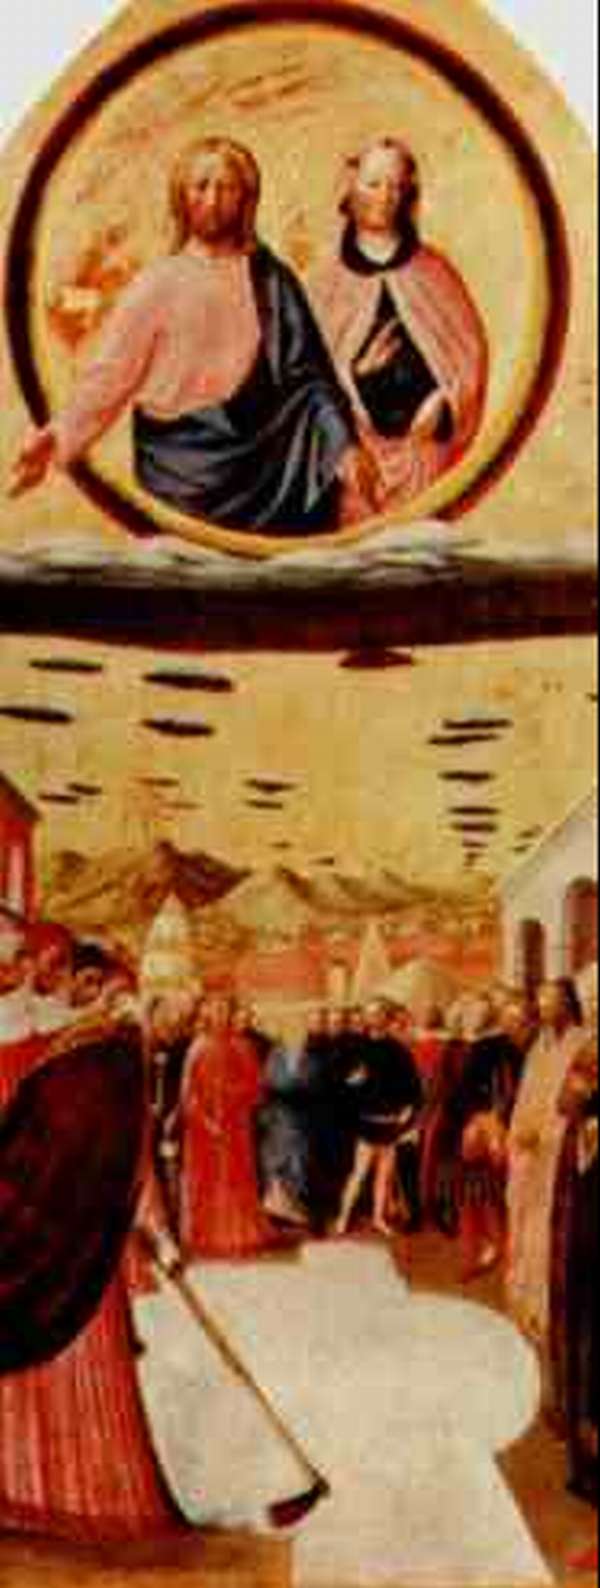 ESta es una pintura antigua de jesus y maria con muchas personas se observa como una cantidad de círculos negros 